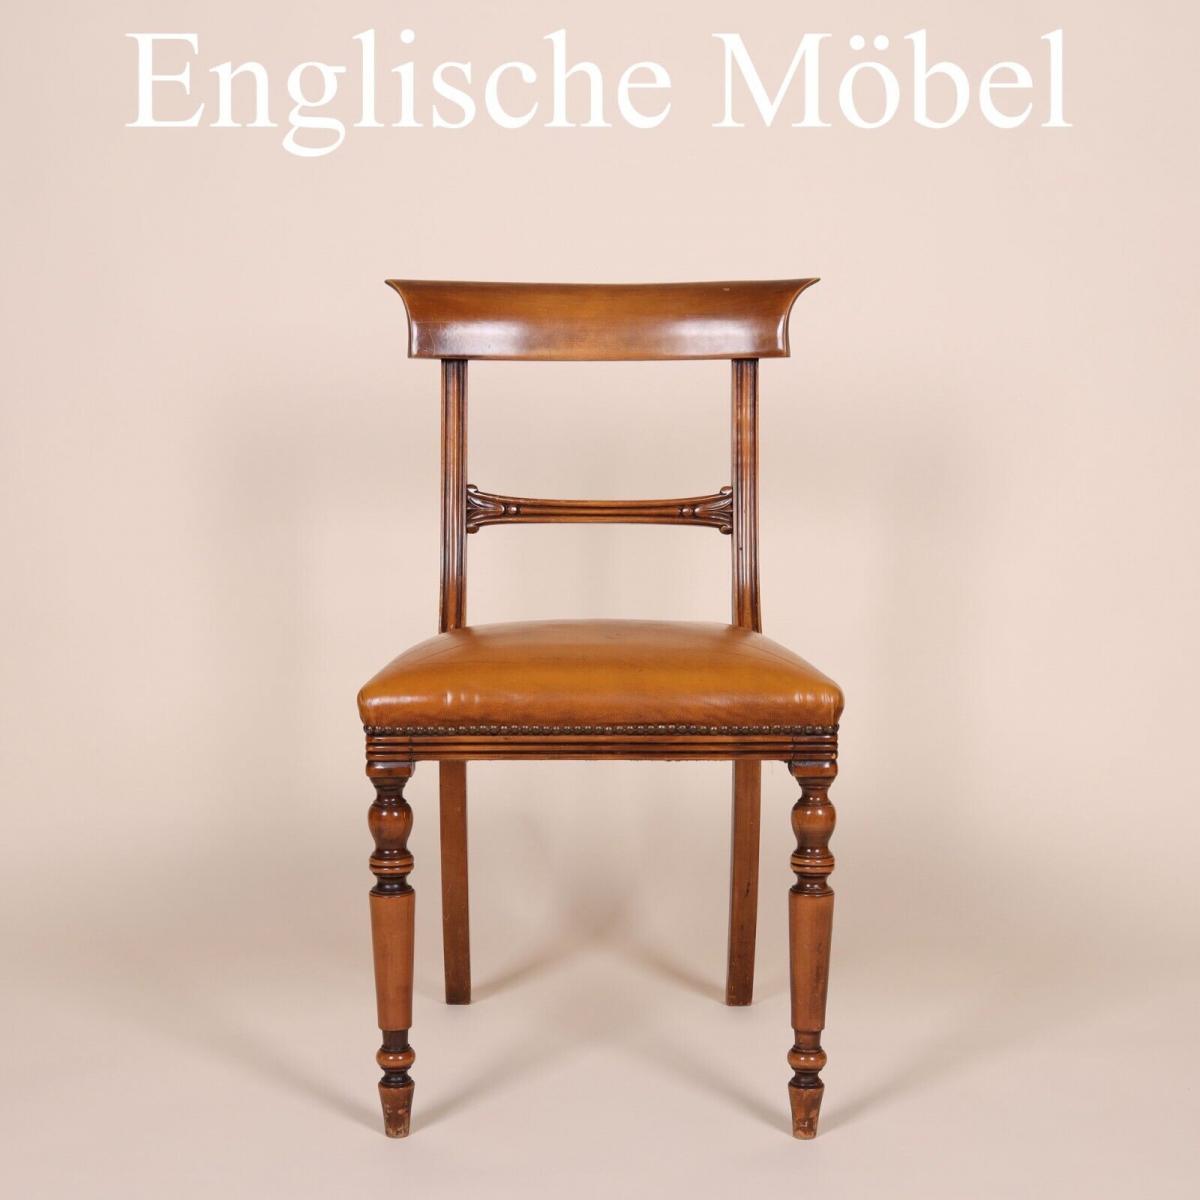 Englische M�bel Set von 6 original Esszimmer Esstisch Stuhl St�hle Mahagoni UK 0